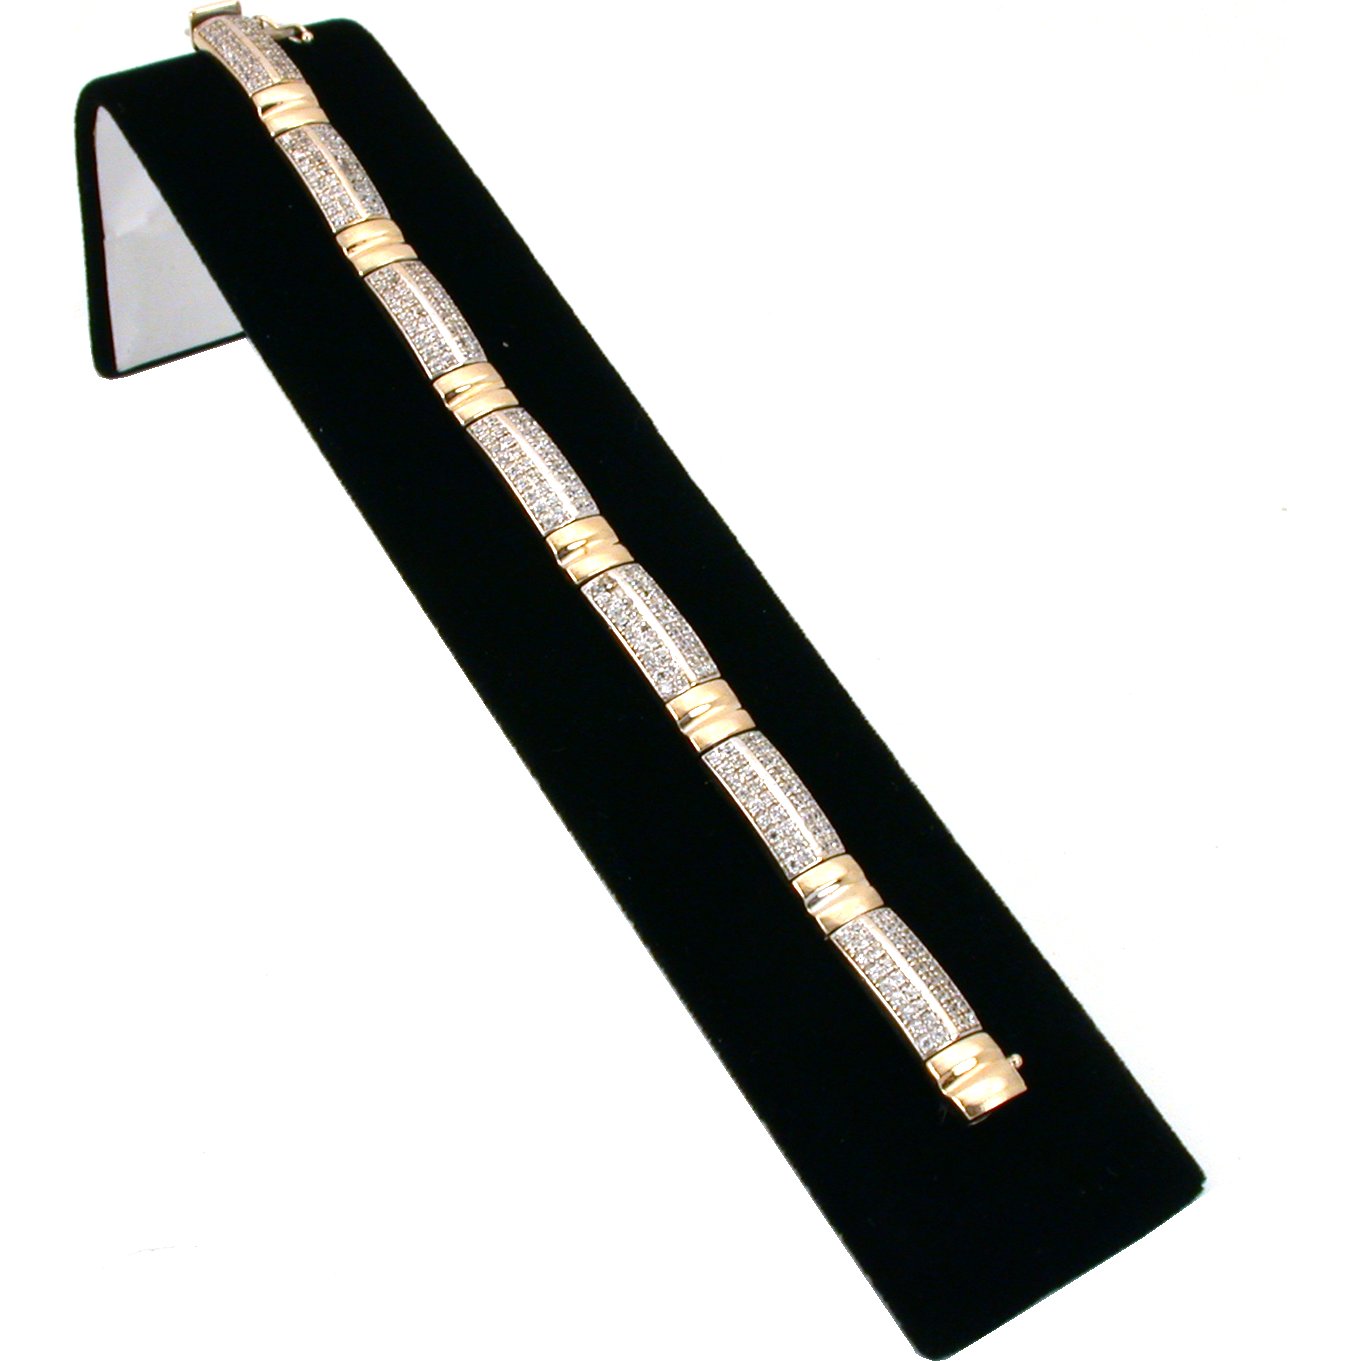 Bracelet, Earring, Necklace, Ring Displays Black Velvet 11Pcs